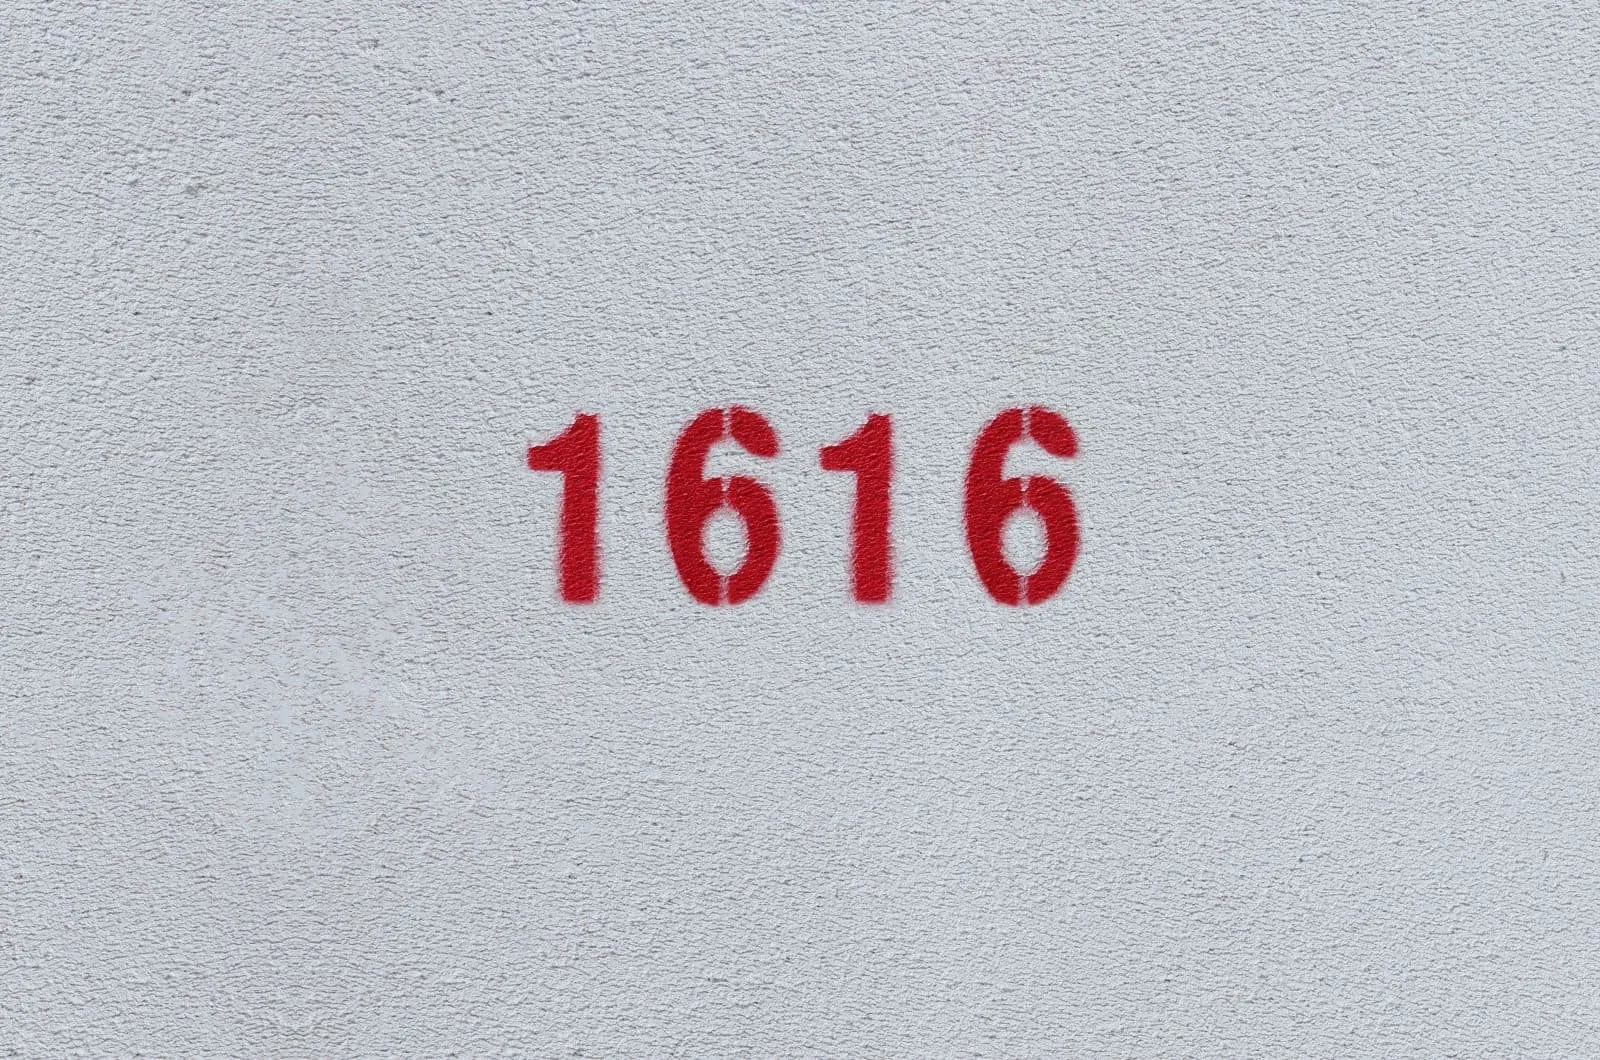 rote Zahl 1616 auf grauem Hintergrund